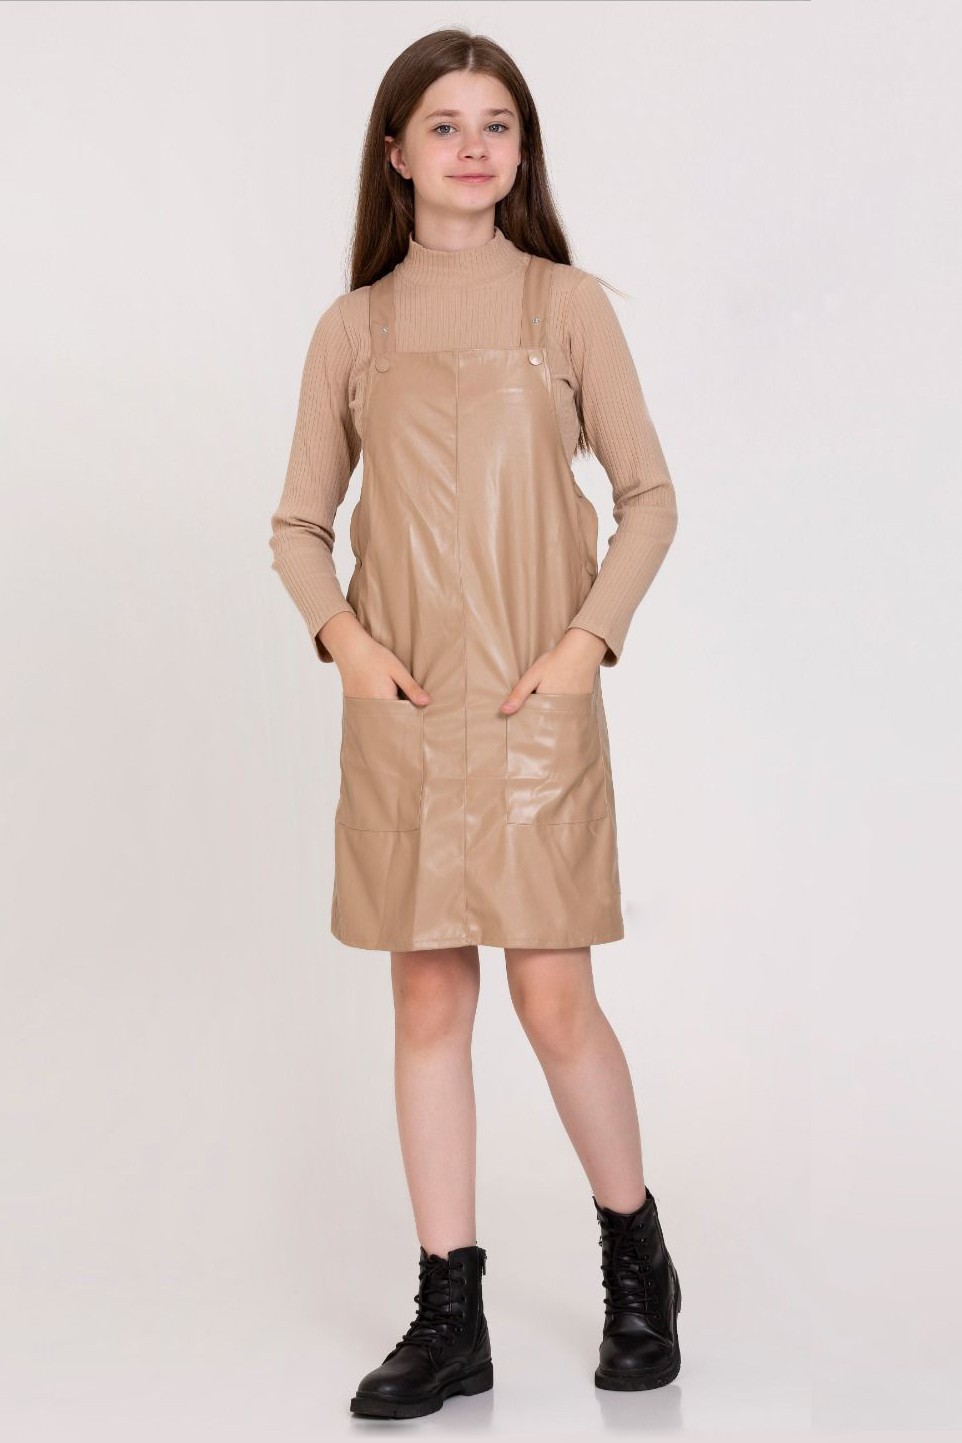 Basıc Deri Çıtçıtlı Elbise 23141 - Bej